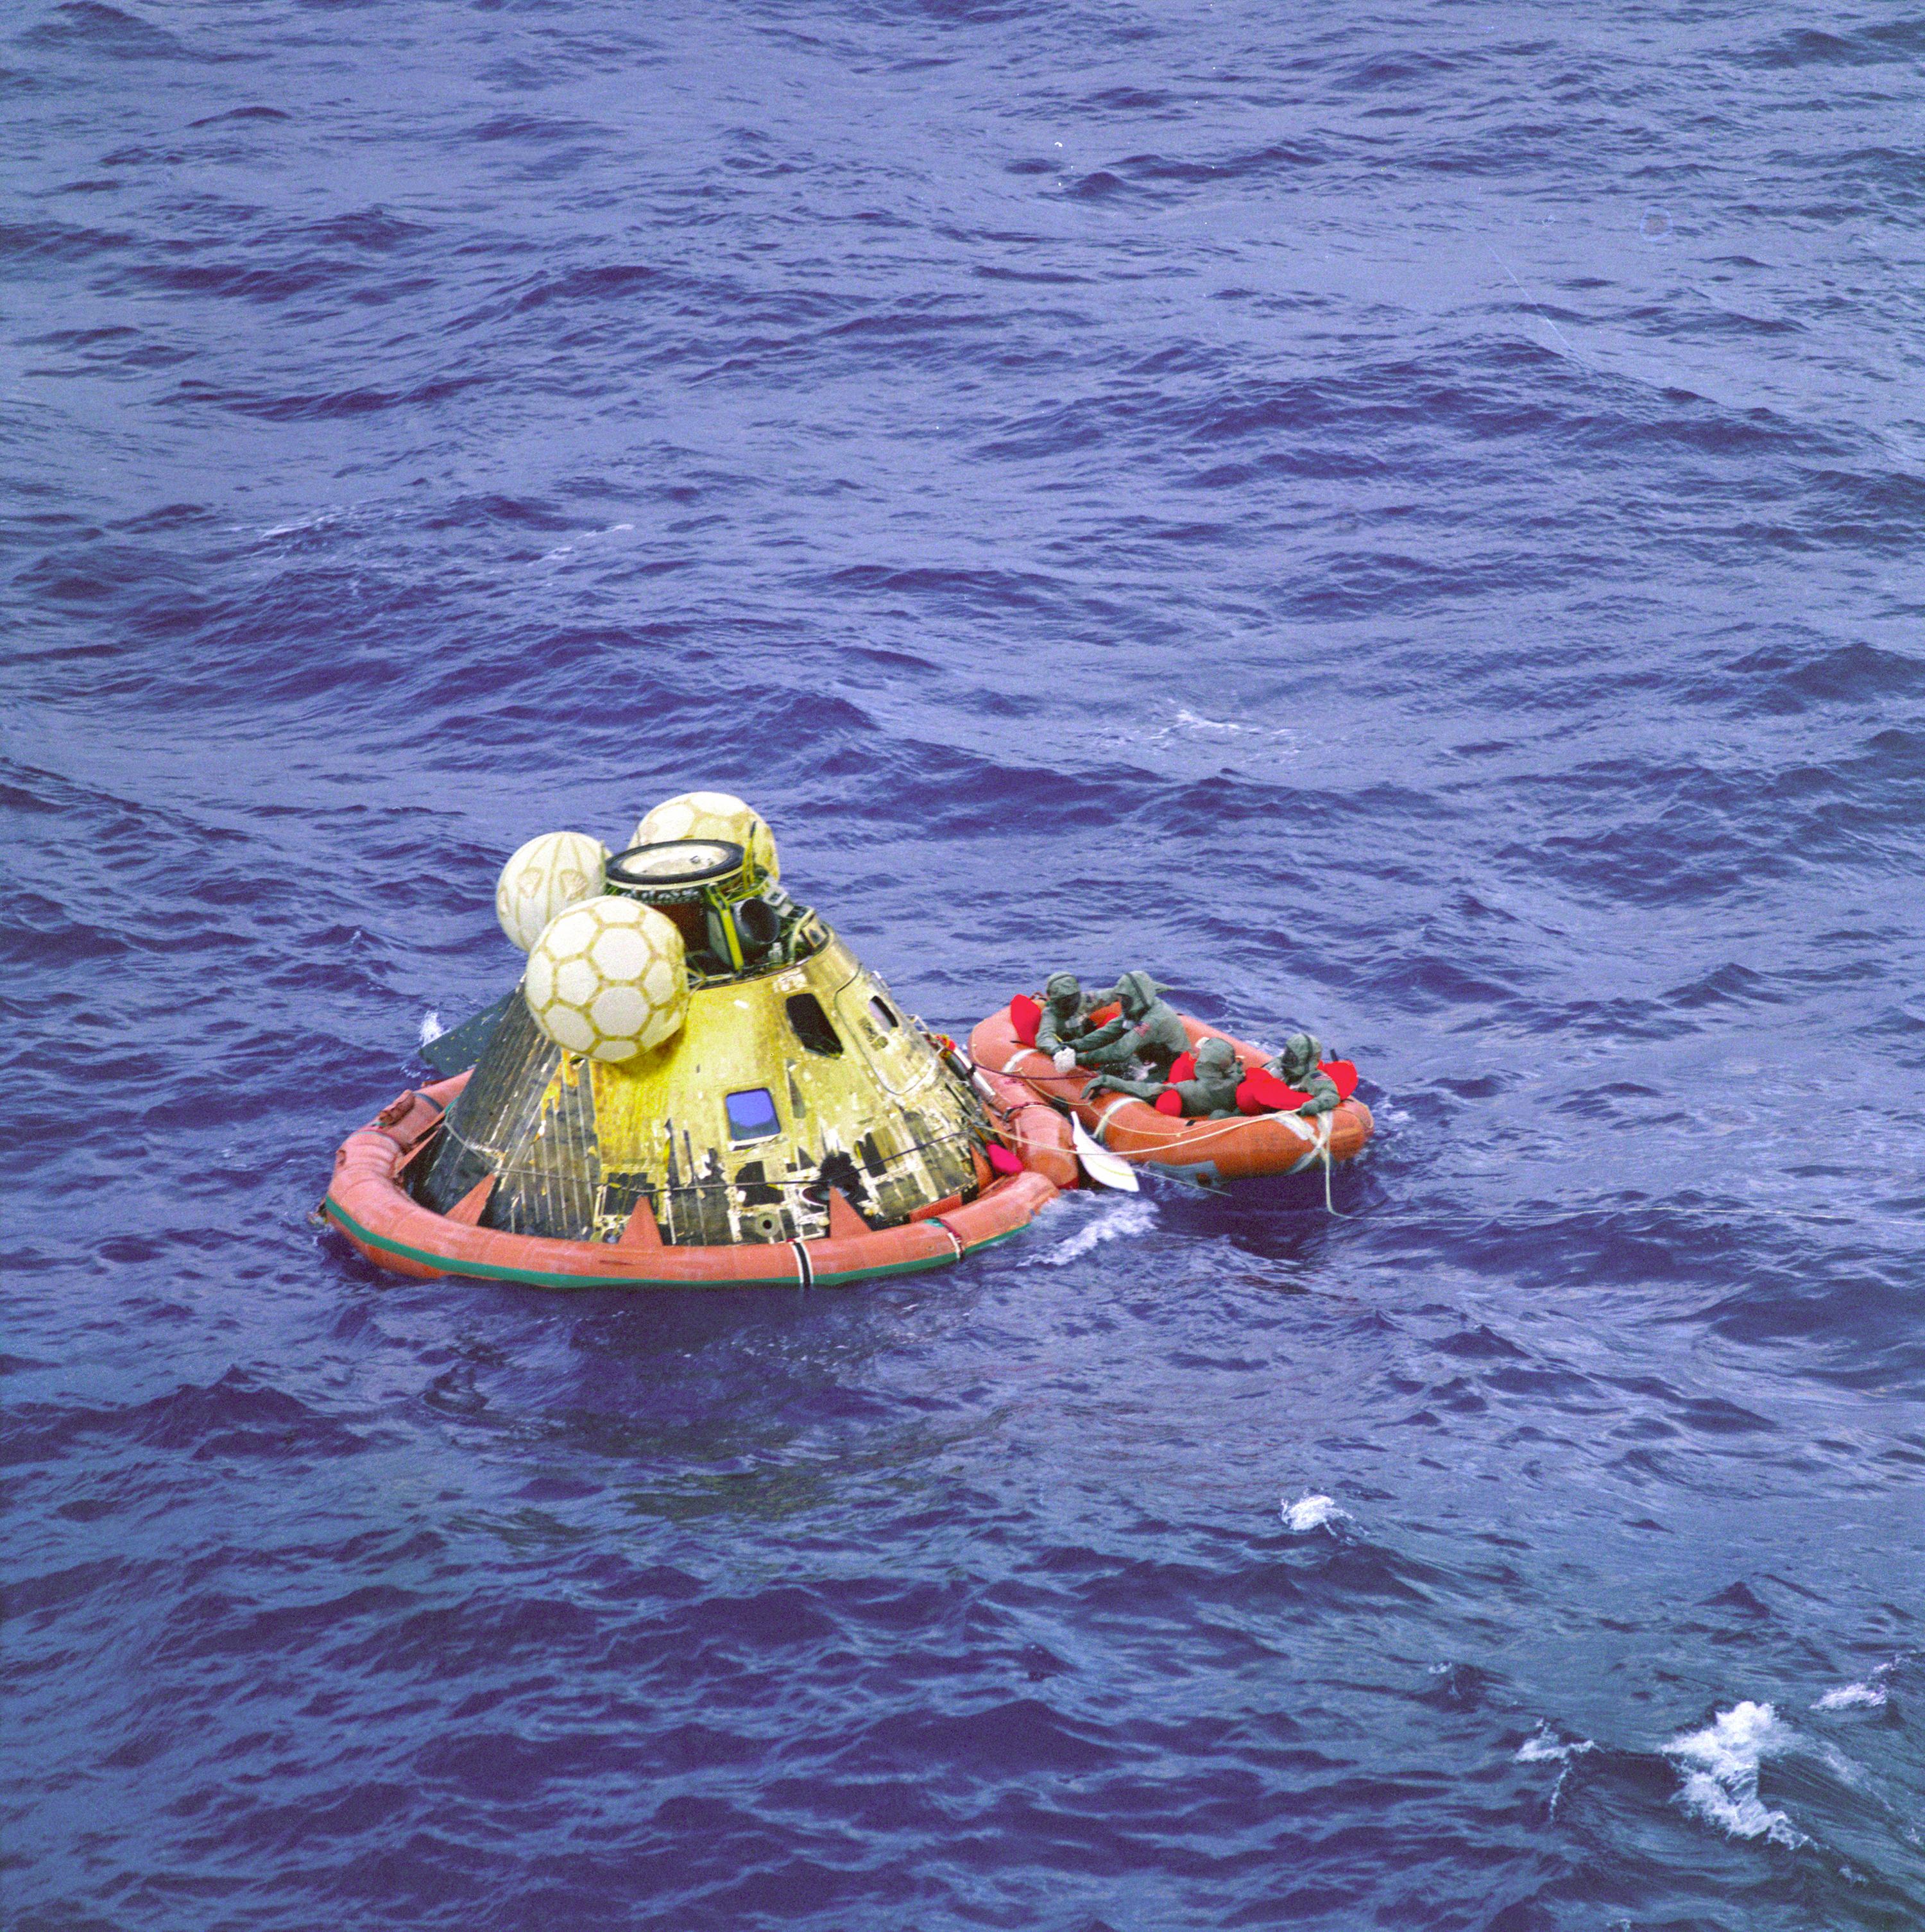 Astronauti su se vratili na Zemlju 24. srpnja 1969., kada su sa svojim modulom sigurno sletjeli u Tihi ocean. Tamo ih je dočekao ratni brod USS Hornet.